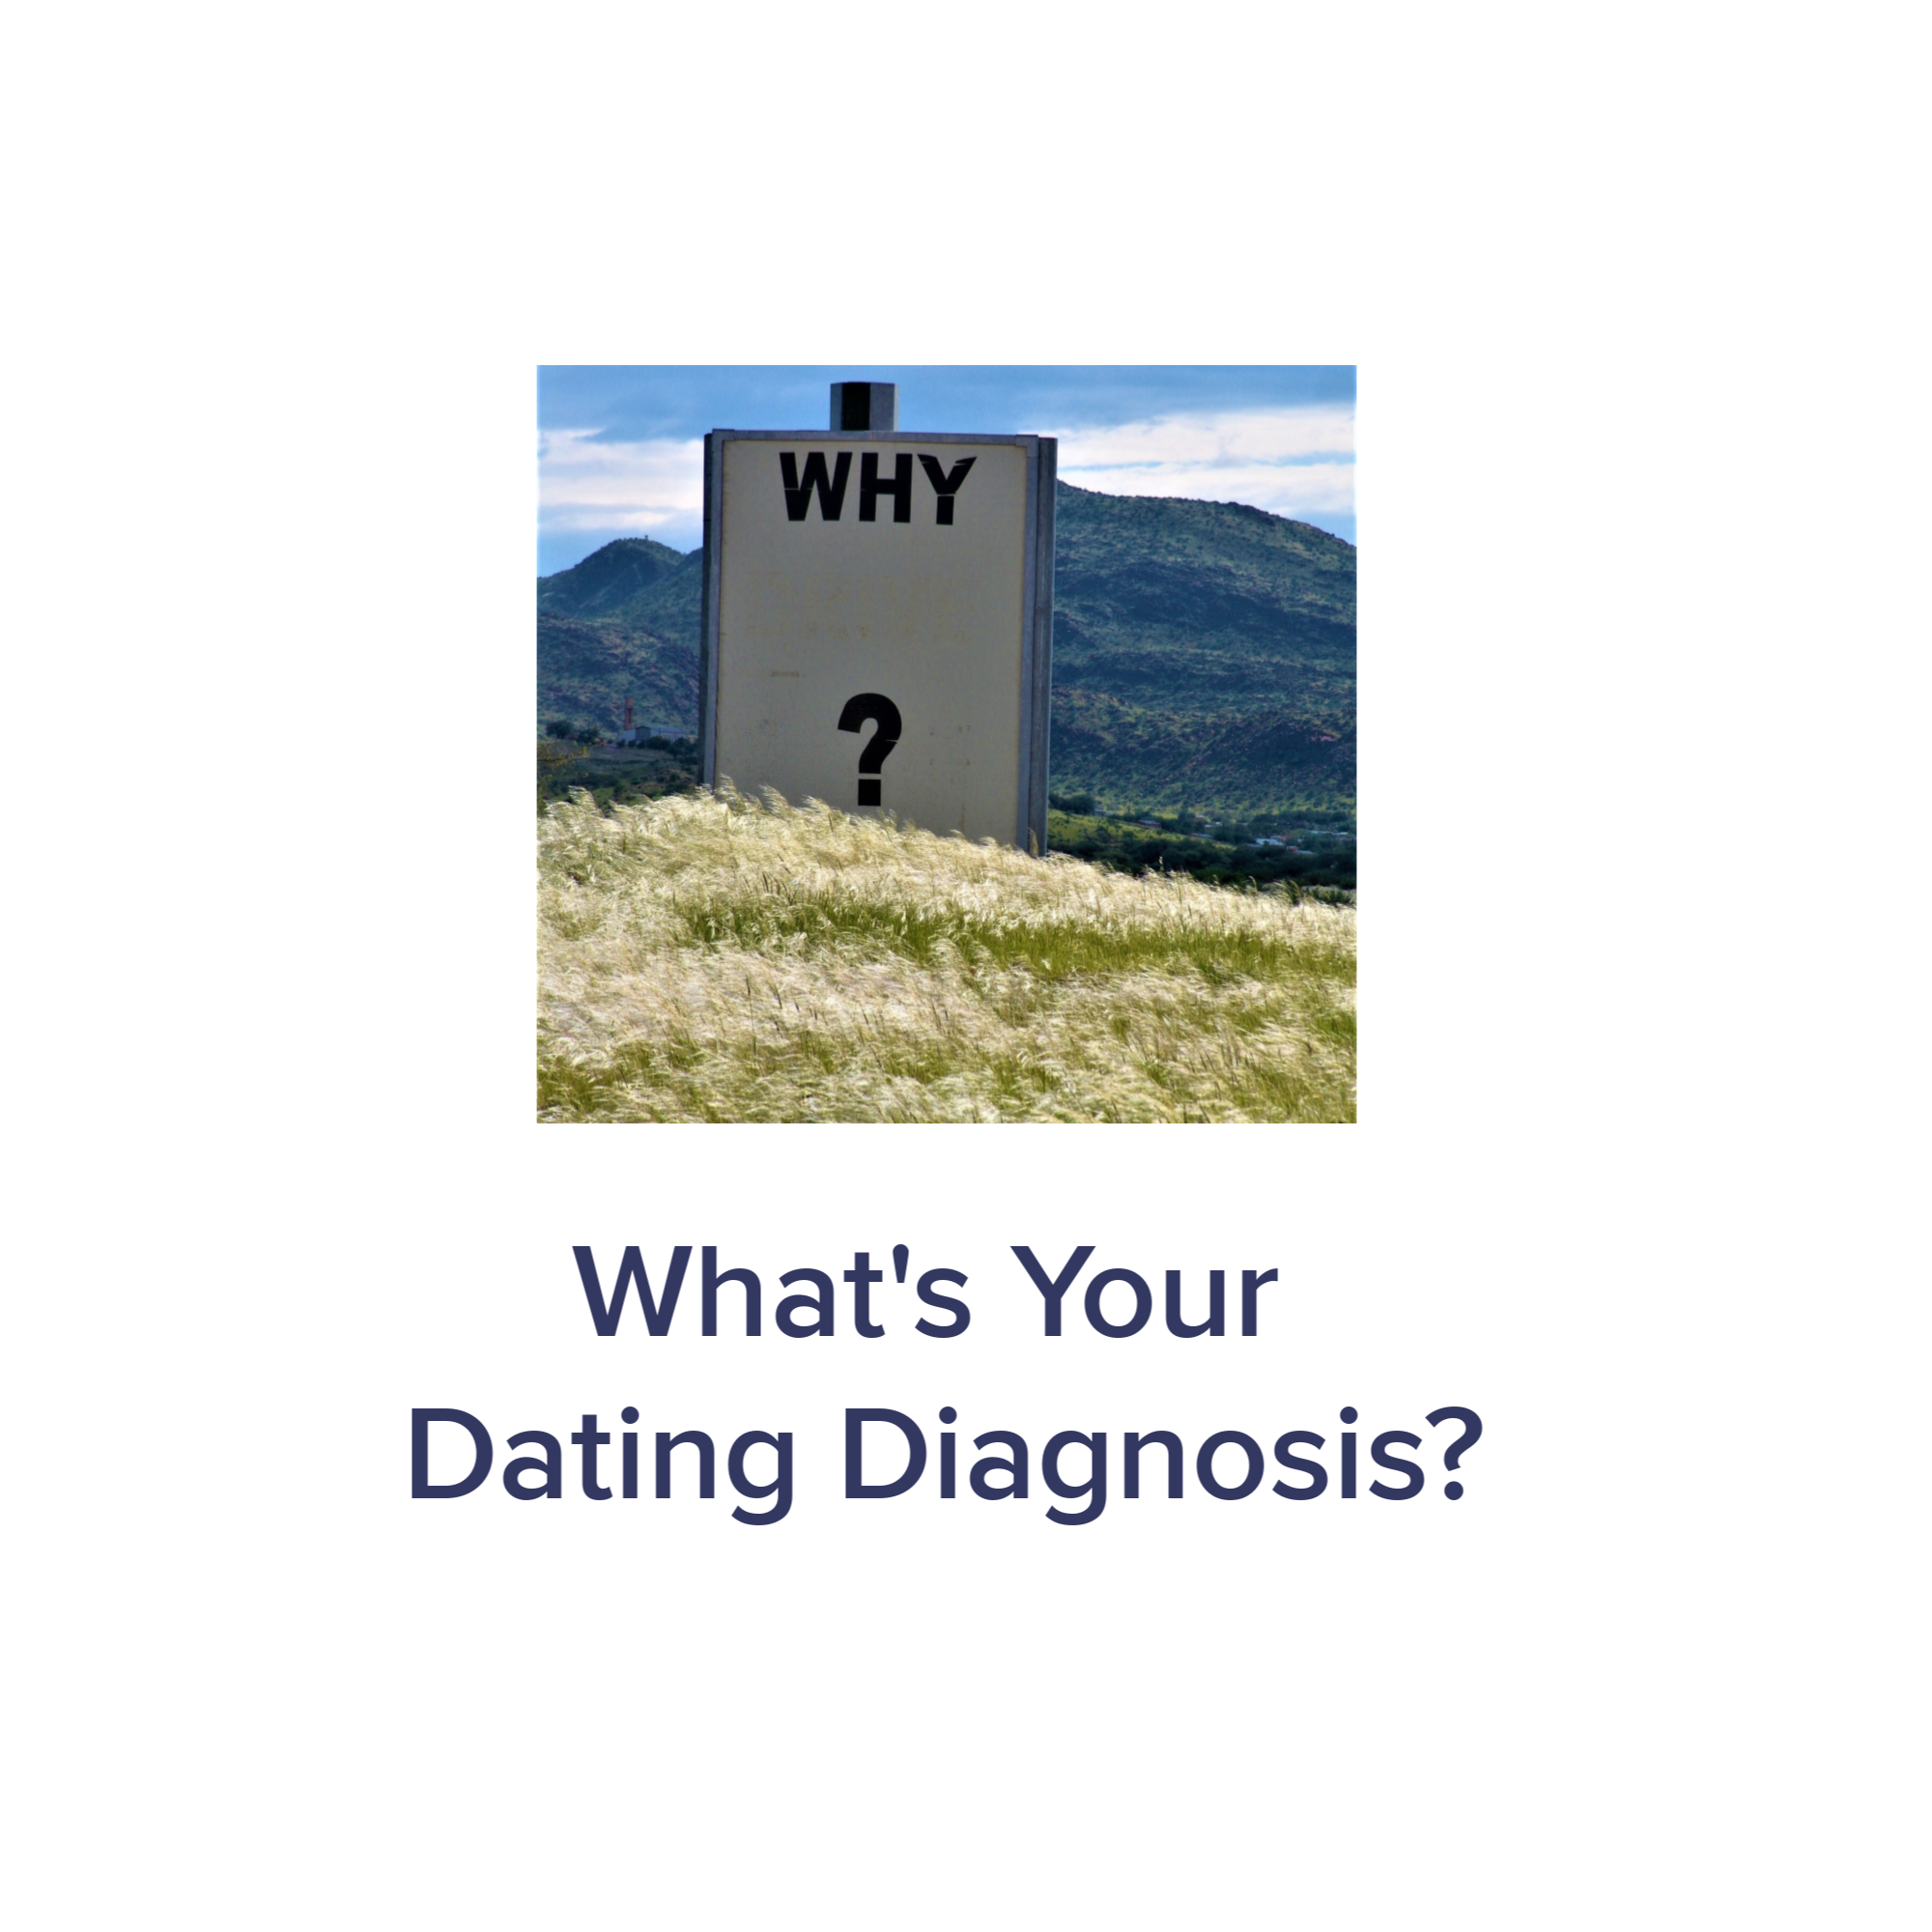 2-14 FH social dating diagnosis.png